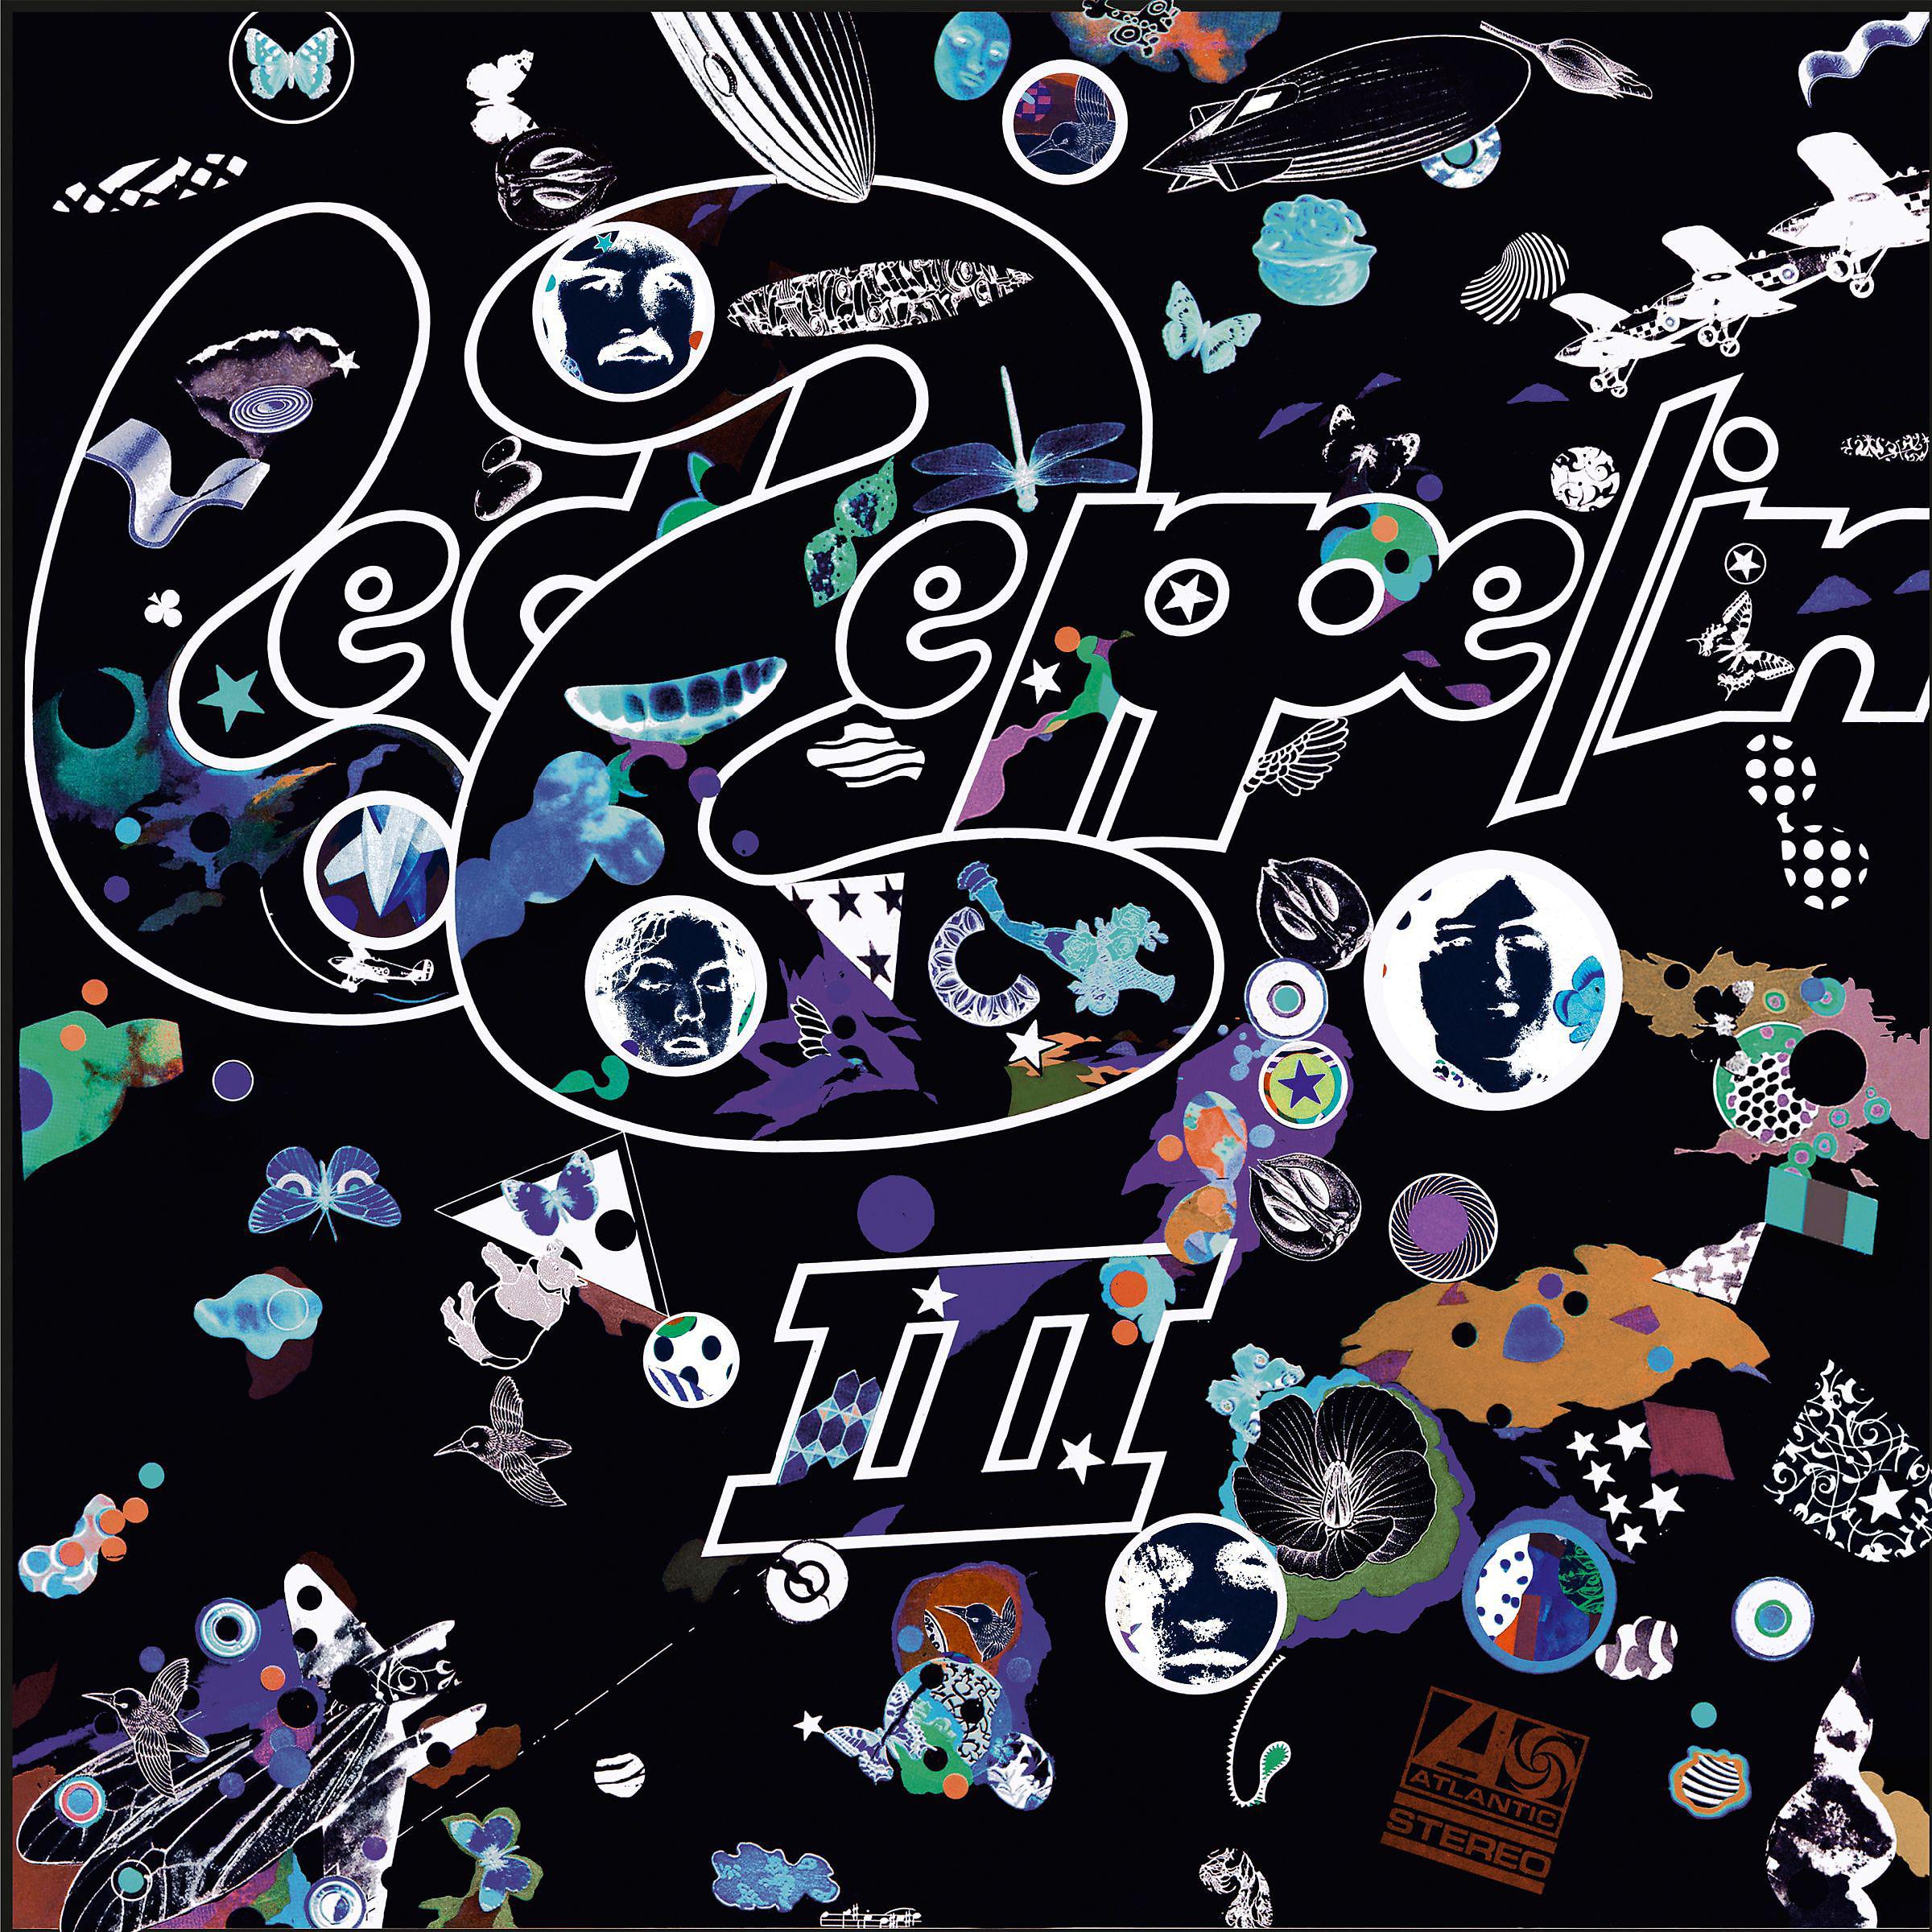 Led zeppelin iii led zeppelin. Led Zeppelin III обложка. 1970 Led Zeppelin III обложка. Led Zeppelin 3 обложка альбома. Led Zeppelin 3 LP.